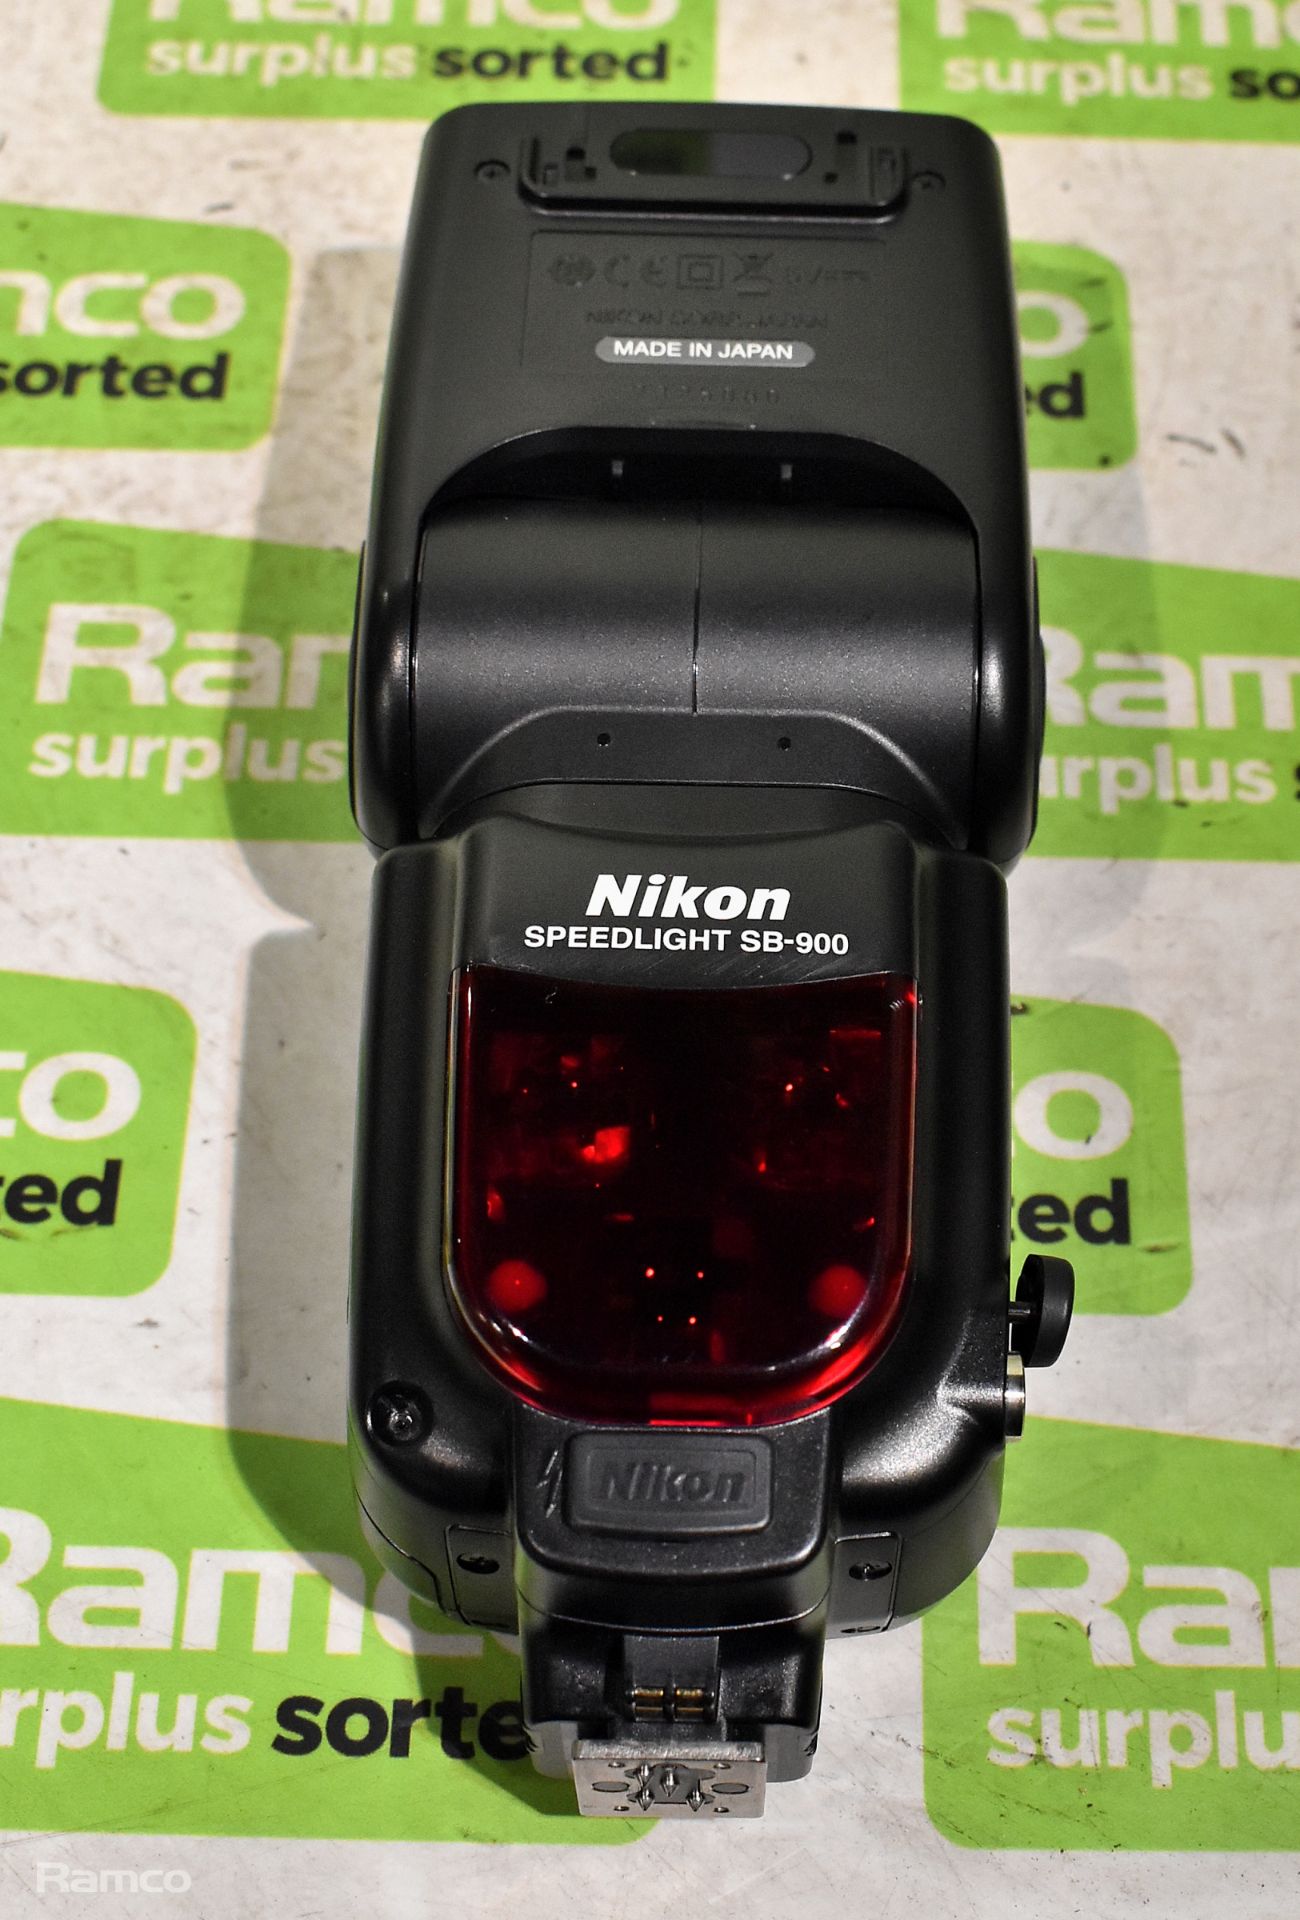 Nikon Speedlight SB-900 flash unit with case - Image 3 of 4